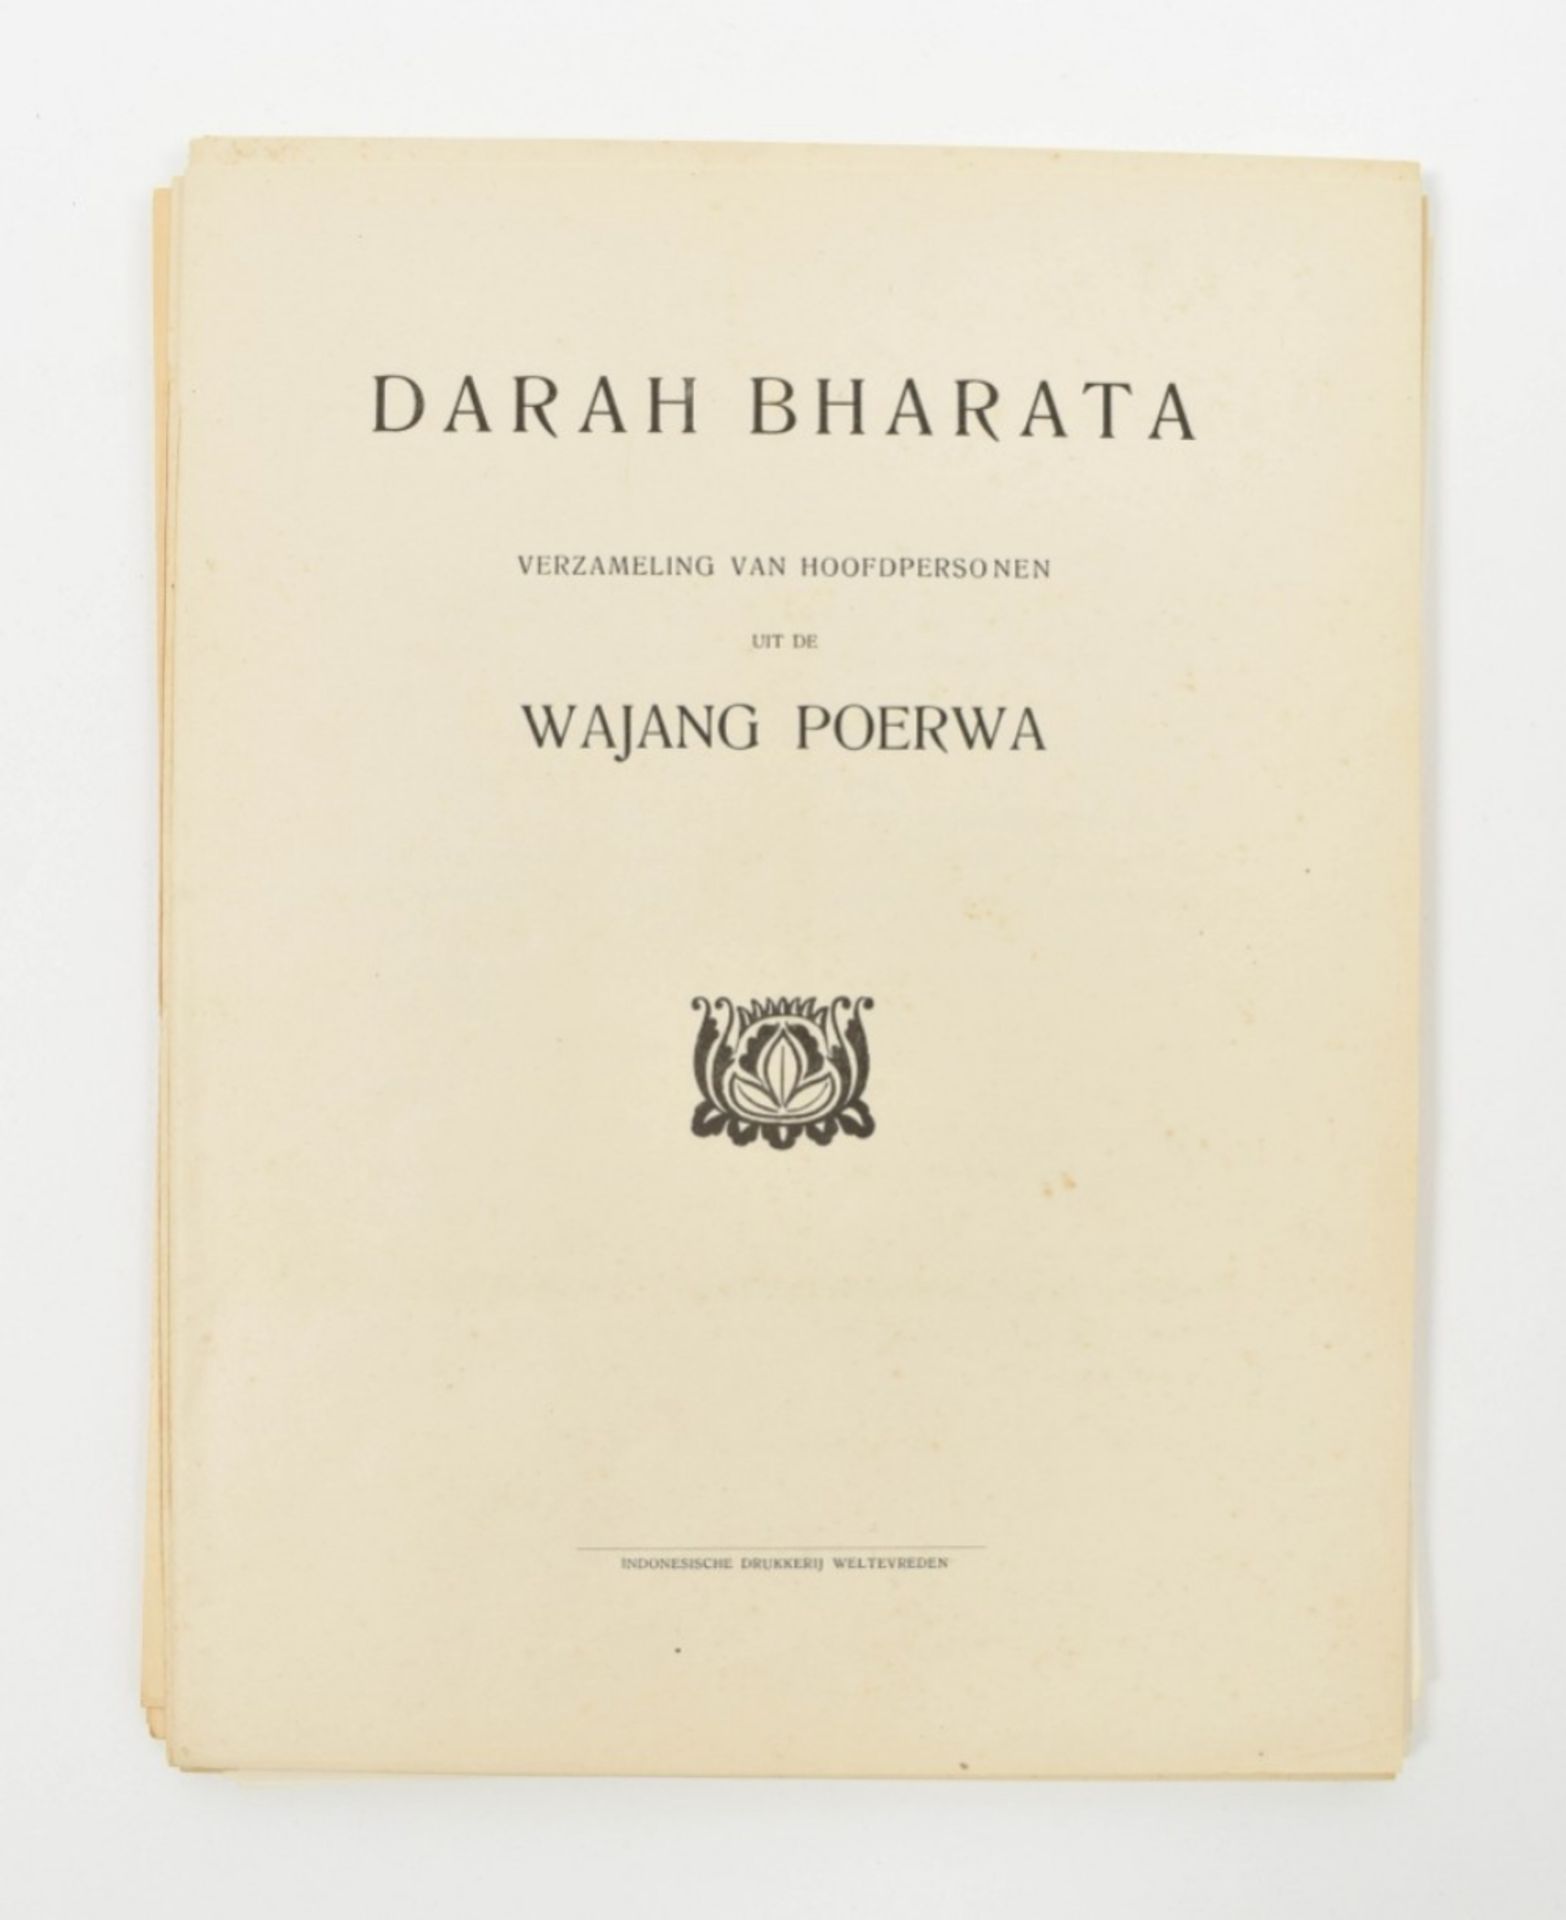 Darah Bharata. Verzameling van hoofdpersonen uit de Wajang Poerwa - Image 2 of 10